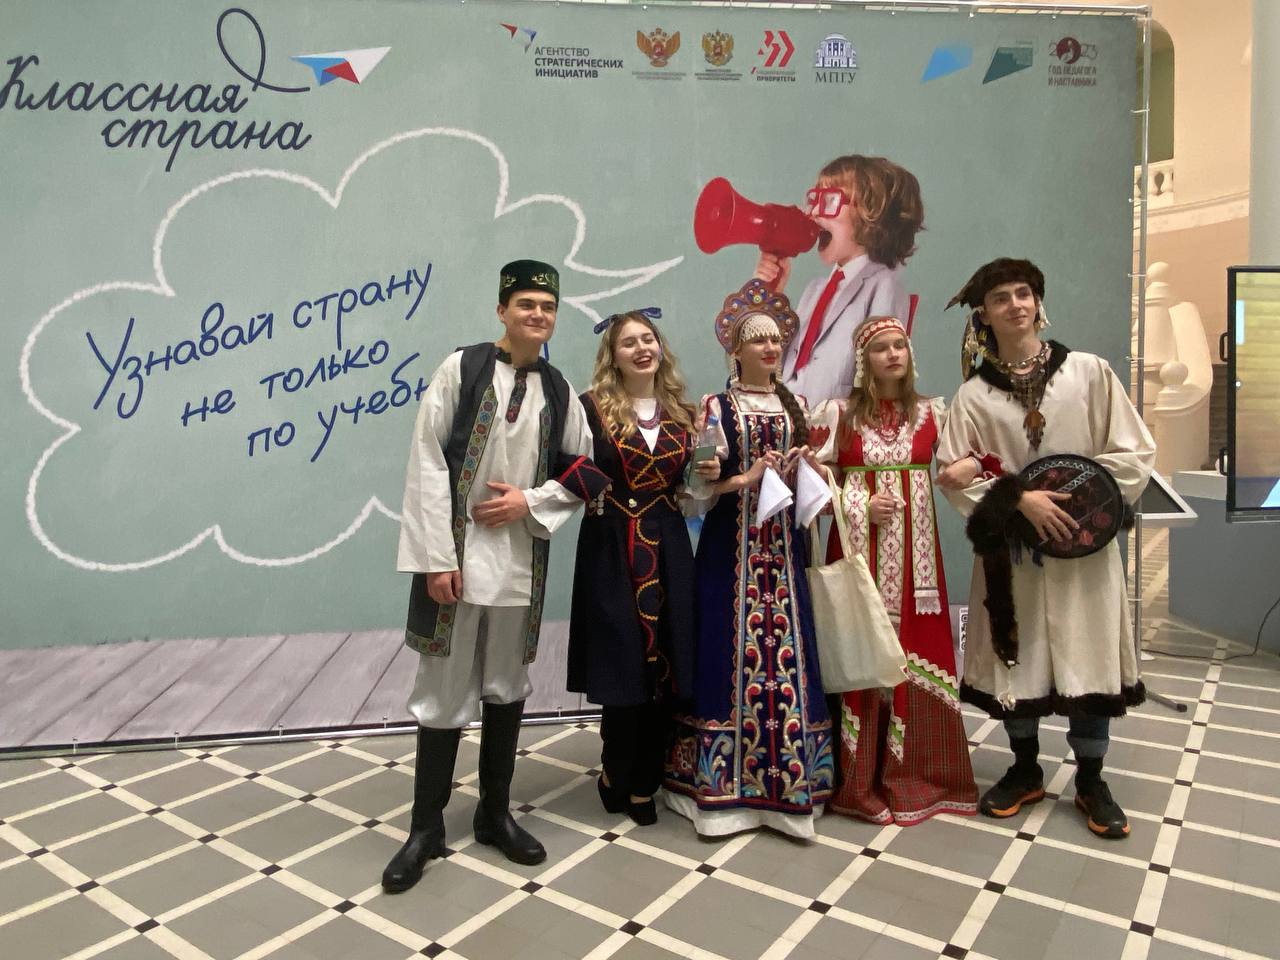 Кузбасская команда выступила в программе "Классная страна"